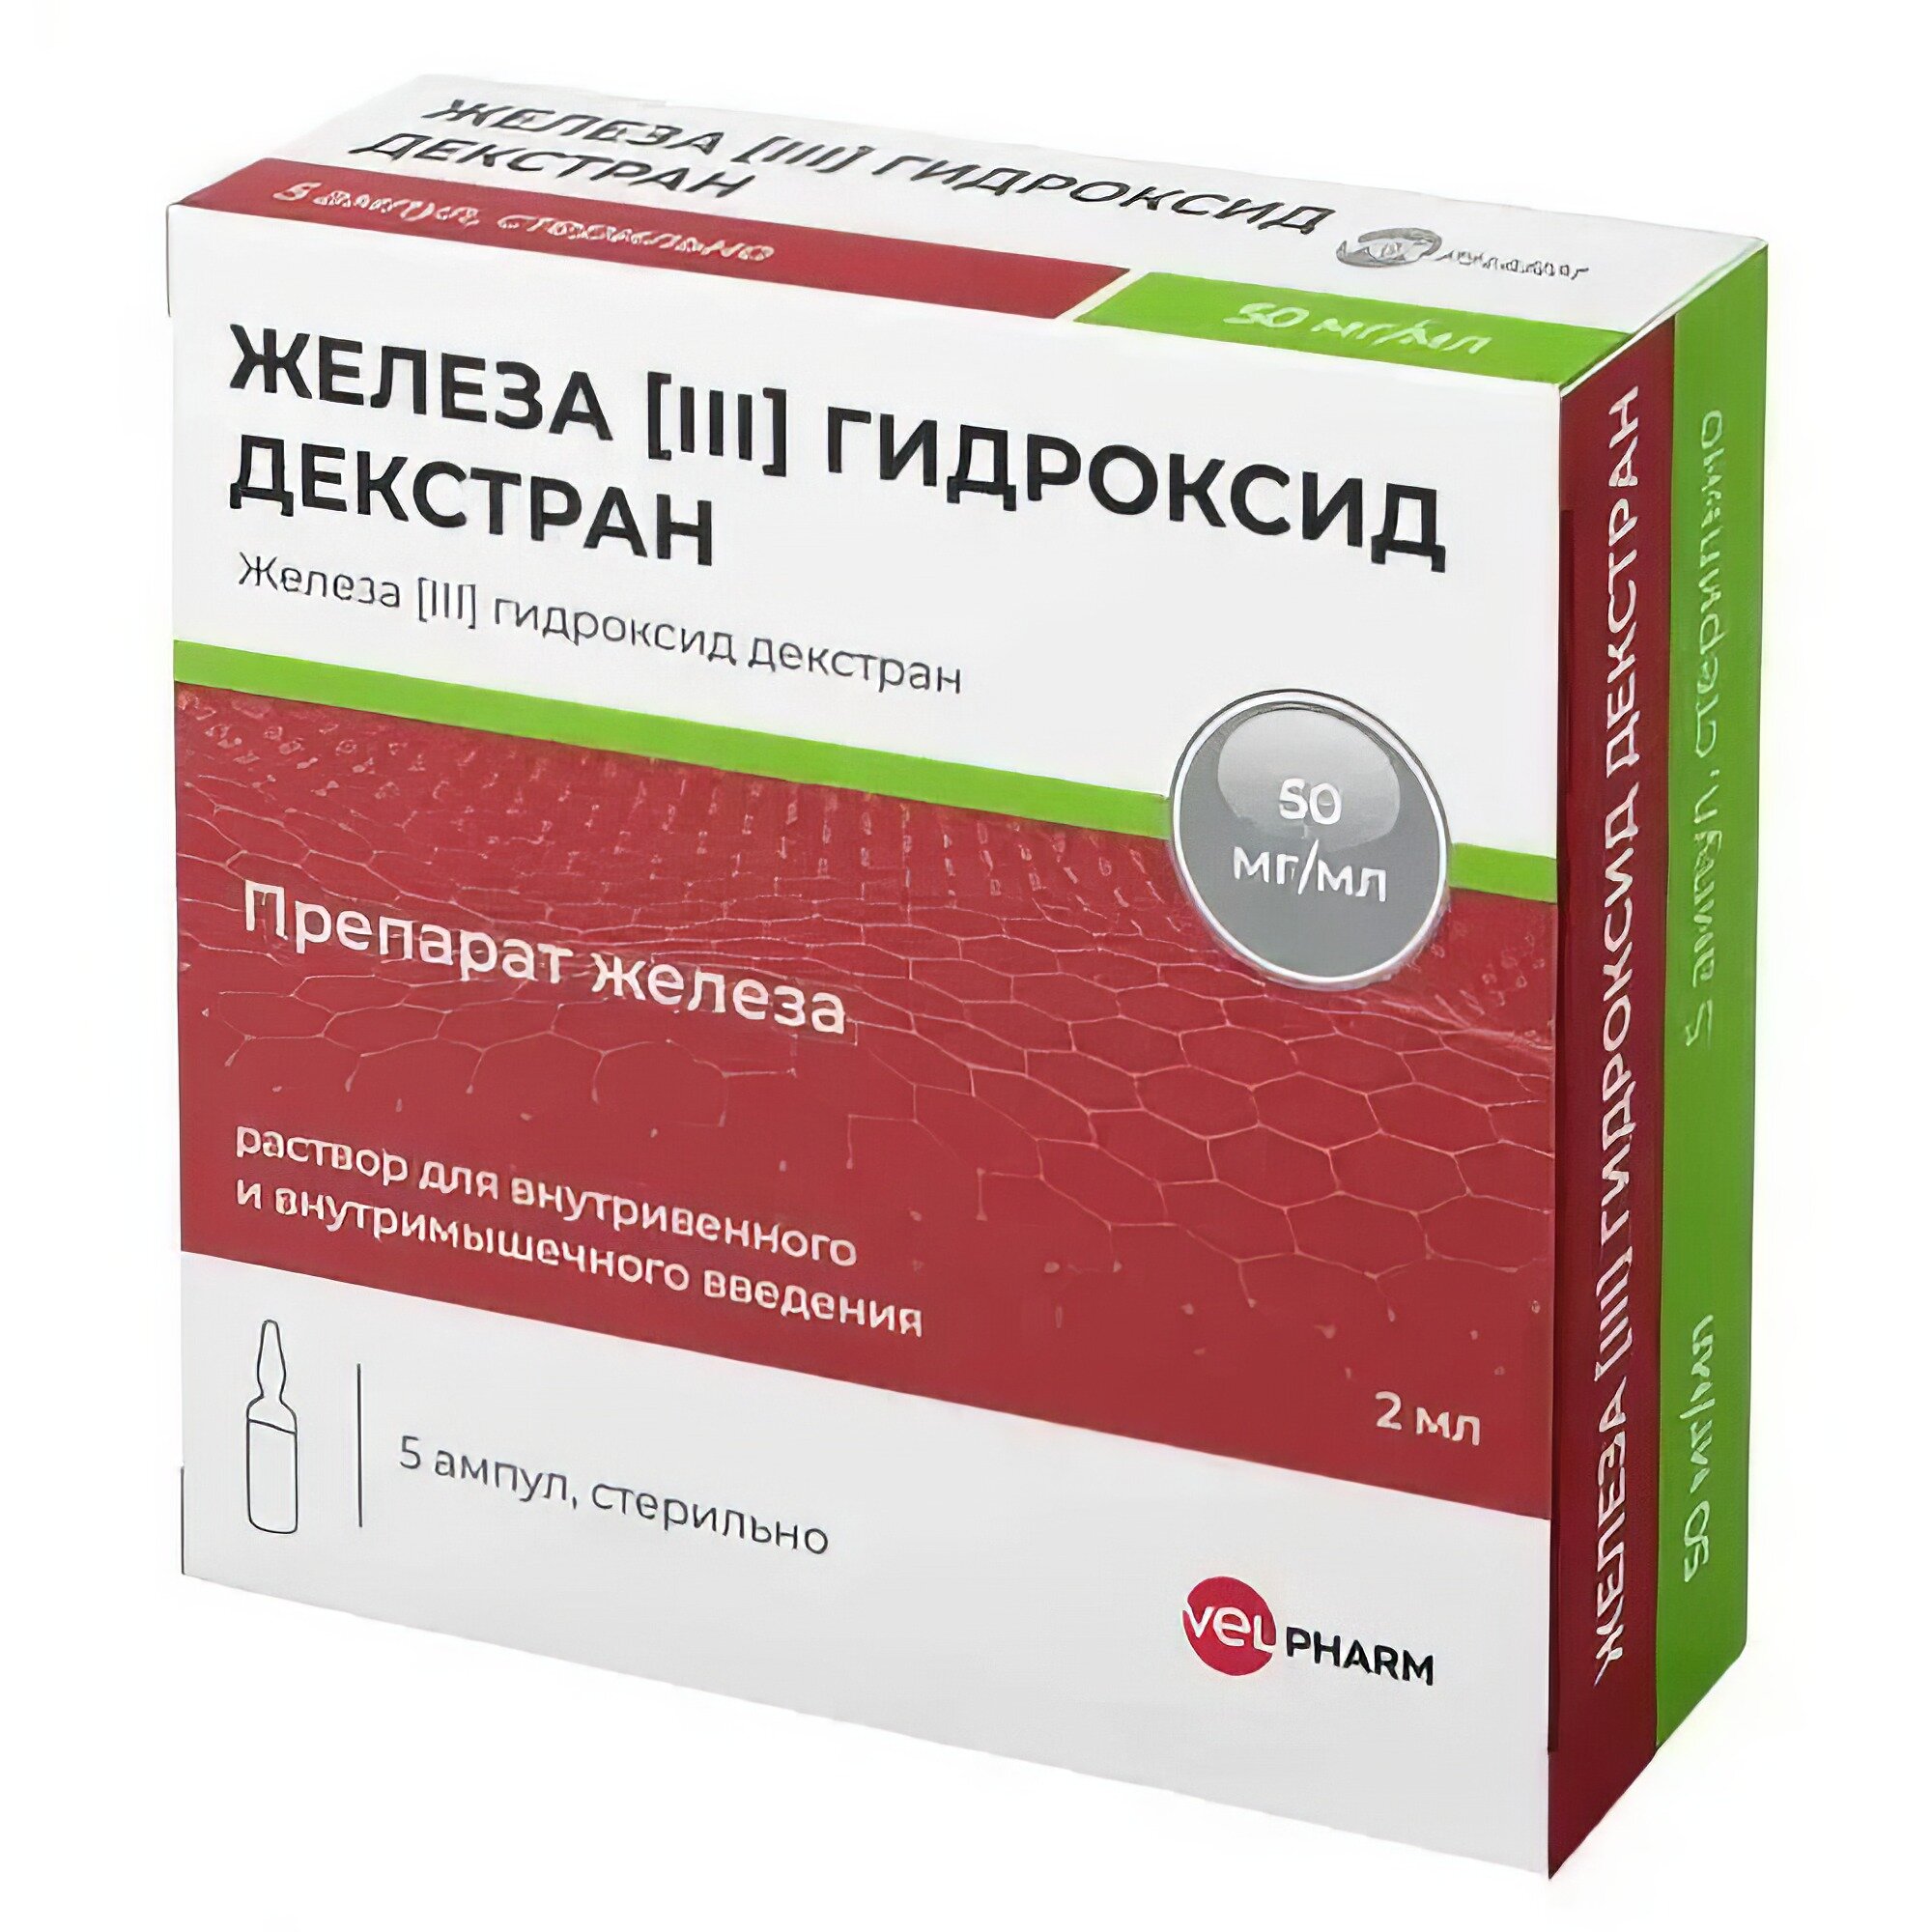 Железа (III) гидроксид декстран, 50 мг/мл, 5 шт.